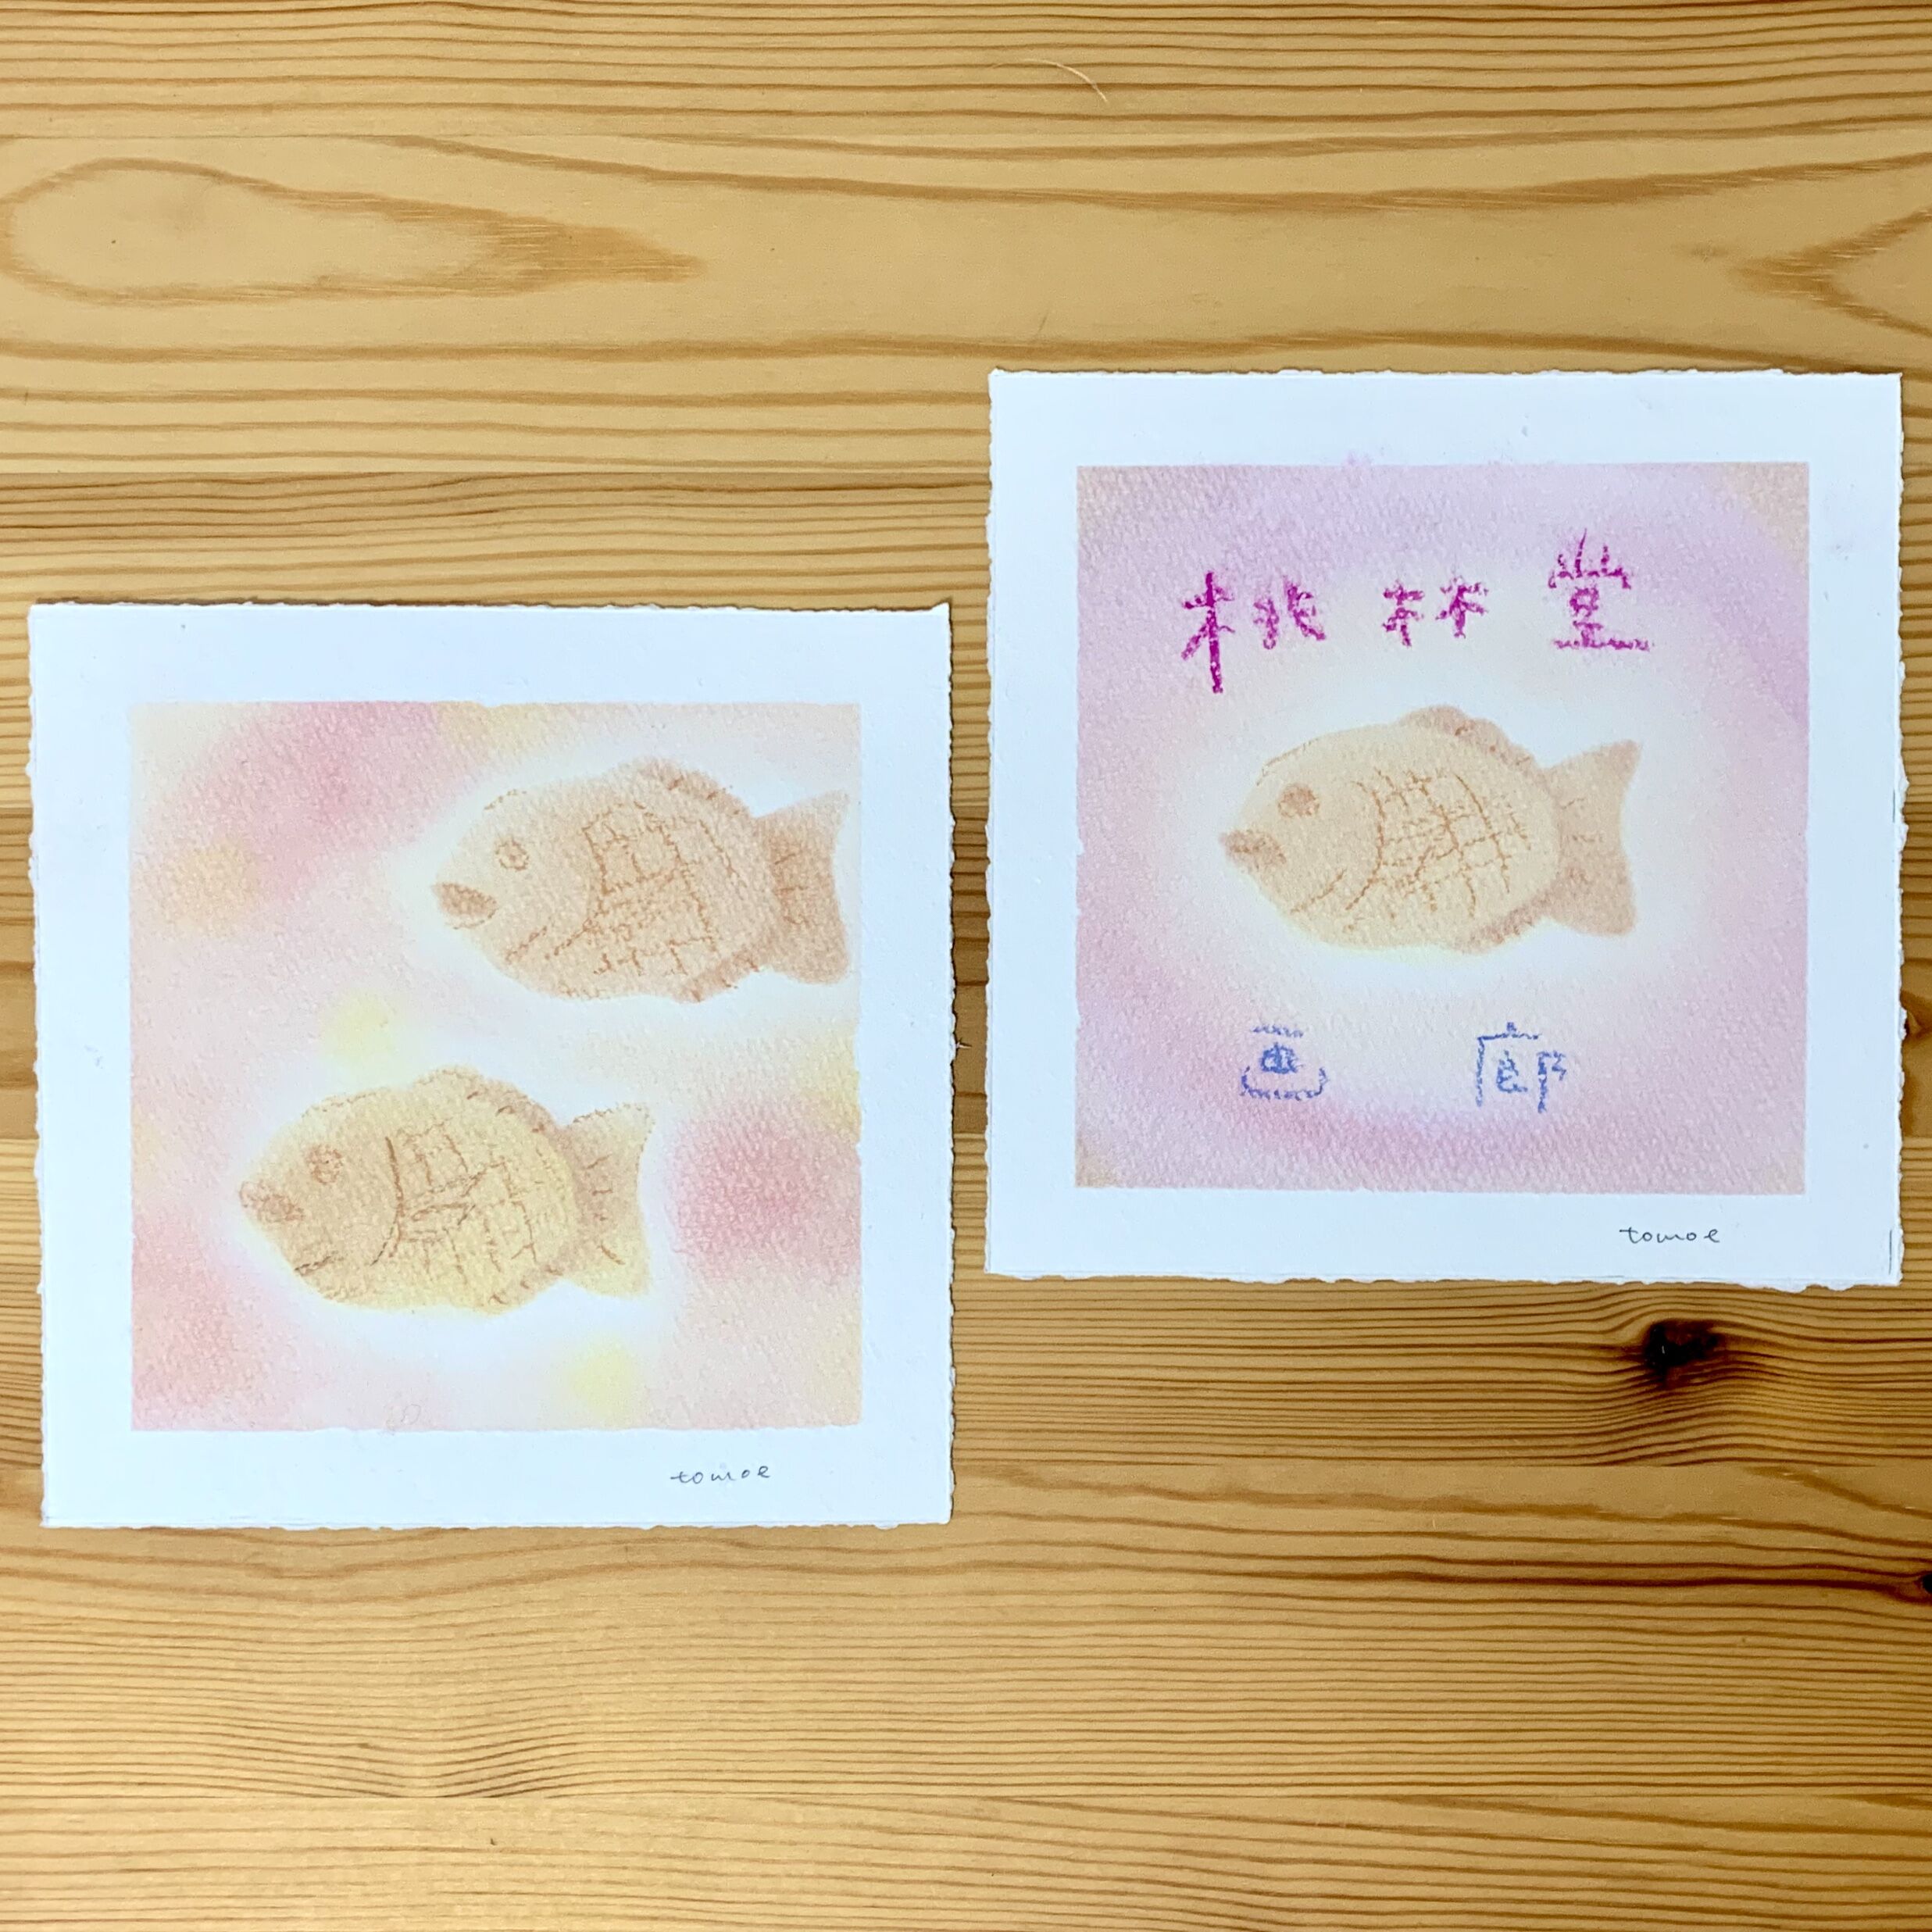 ☆作品展特別WS☆パステルシャインアートで桃林堂さんの「小鯛焼」を描こうの写真1枚目